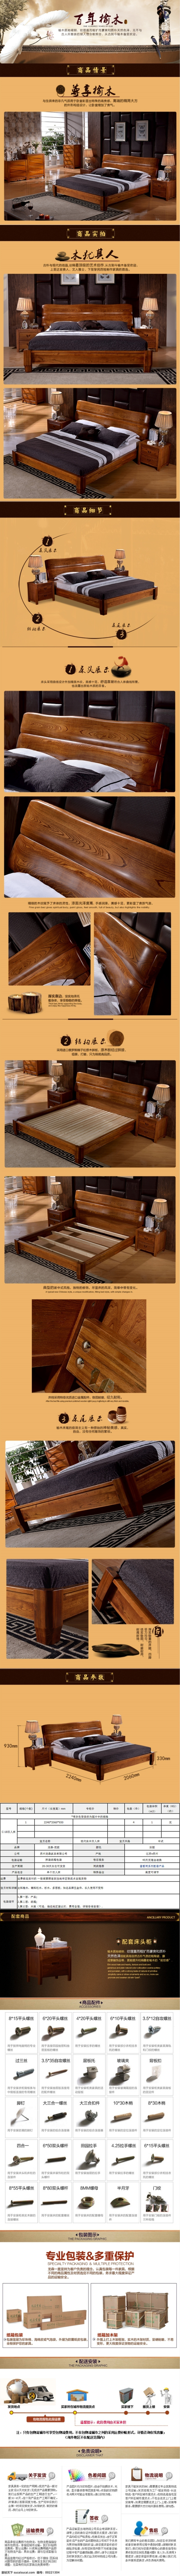 中式实木床 橡木床 中式 家具 详情 页 木床 橡木 淘宝素材 淘宝设计 淘宝模板下载 白色